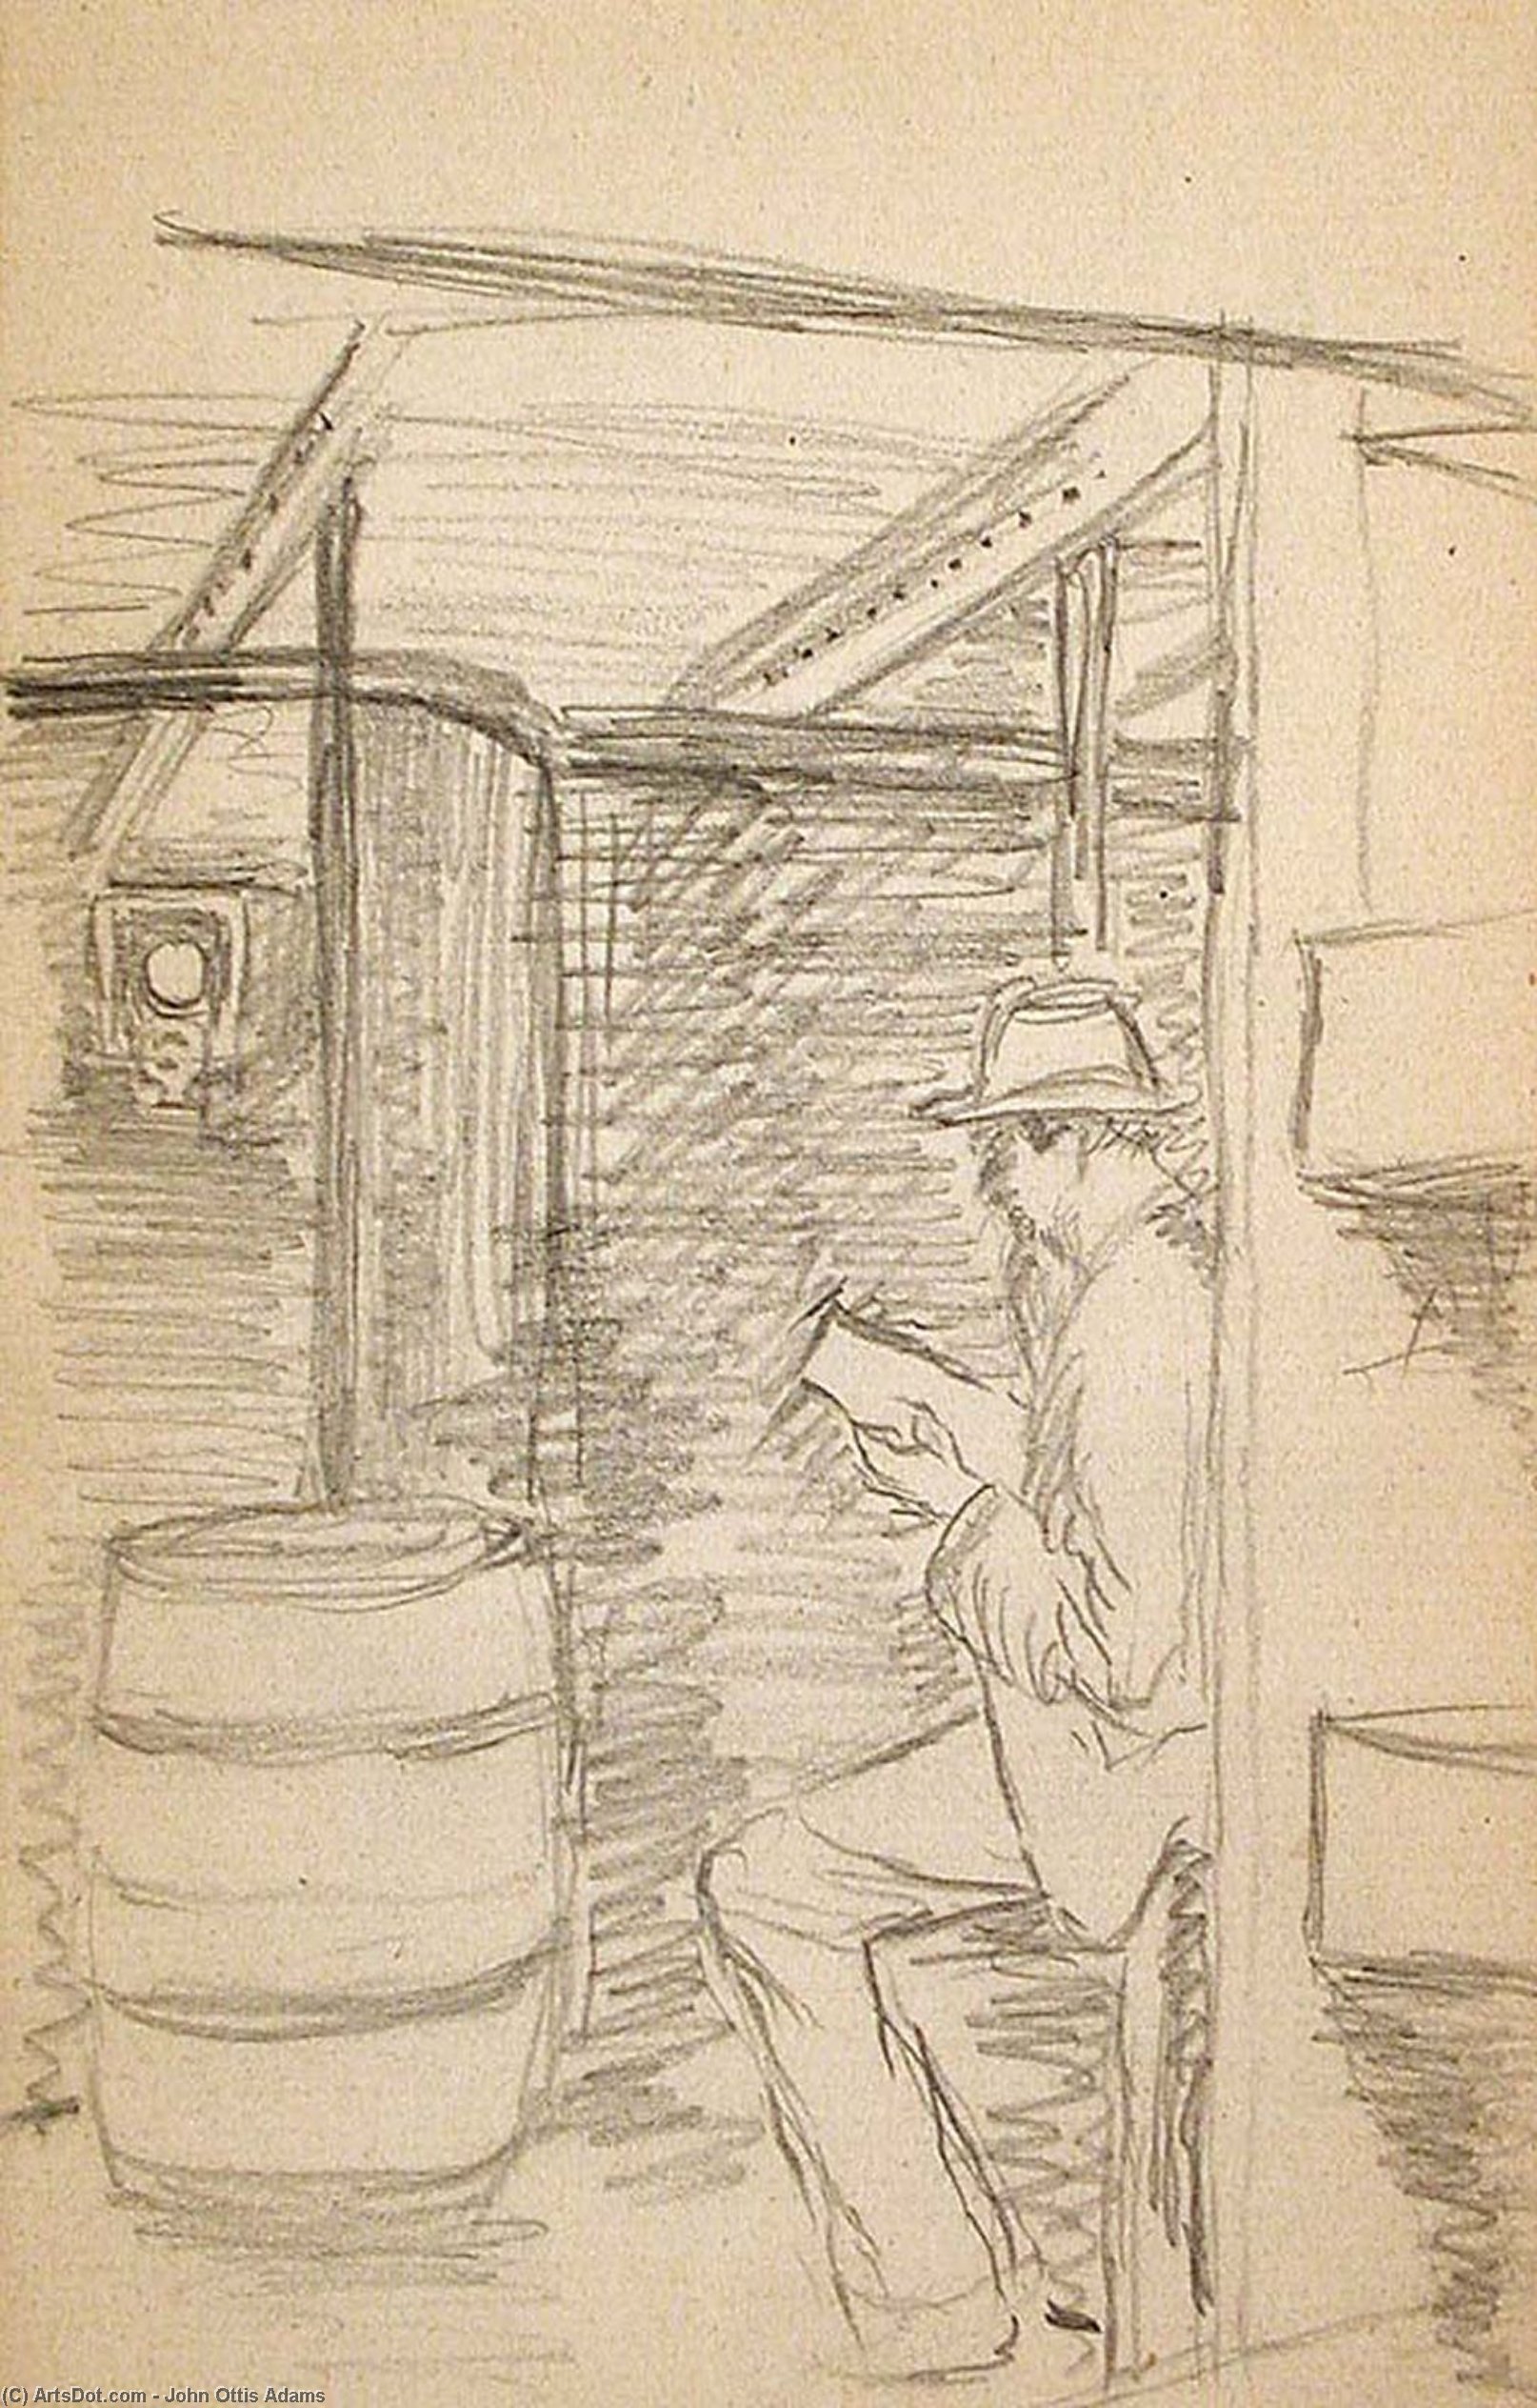 WikiOO.org - Encyclopedia of Fine Arts - Målning, konstverk John Ottis Adams - Man Reading in Ship's Cabin